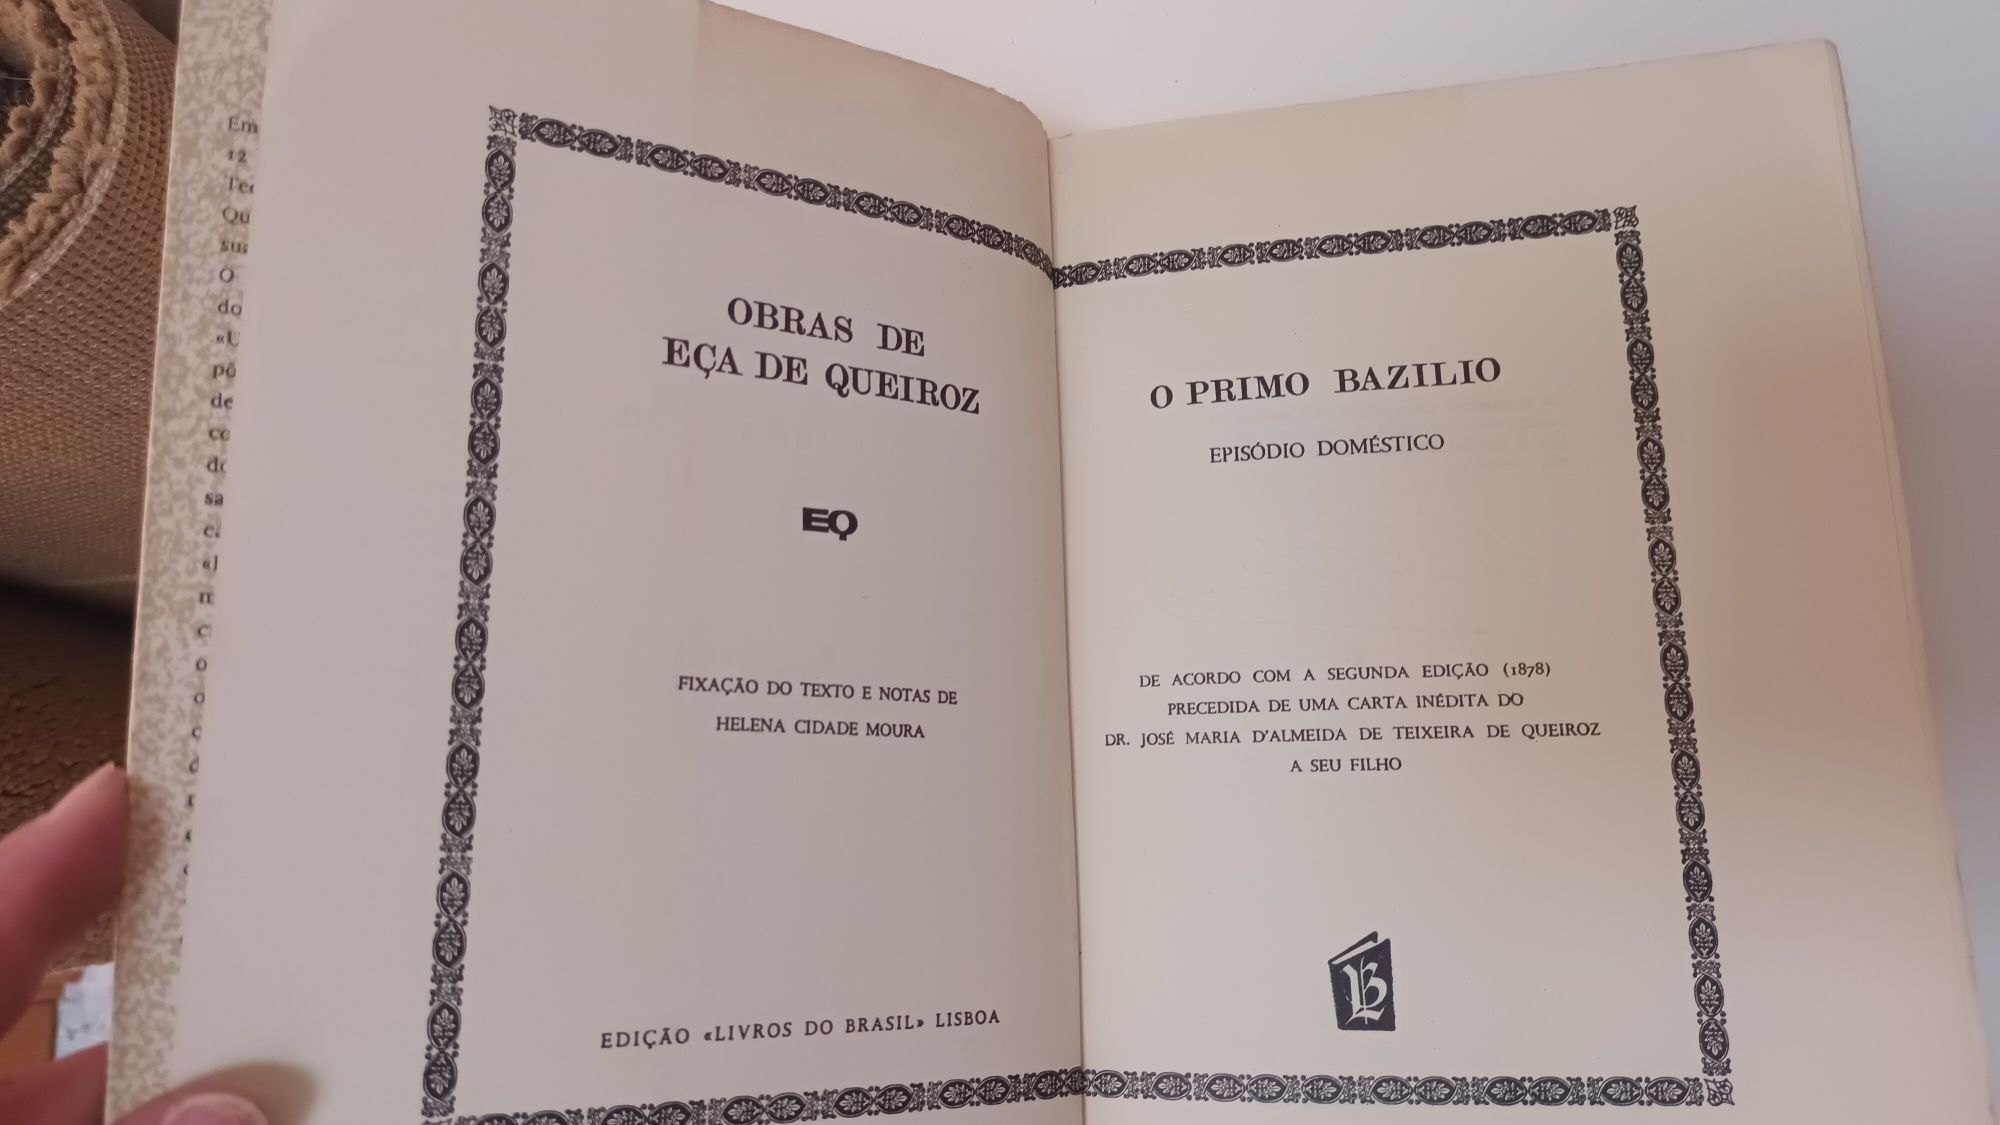 Livro "O primo Basilio" de Eça de Queiroz